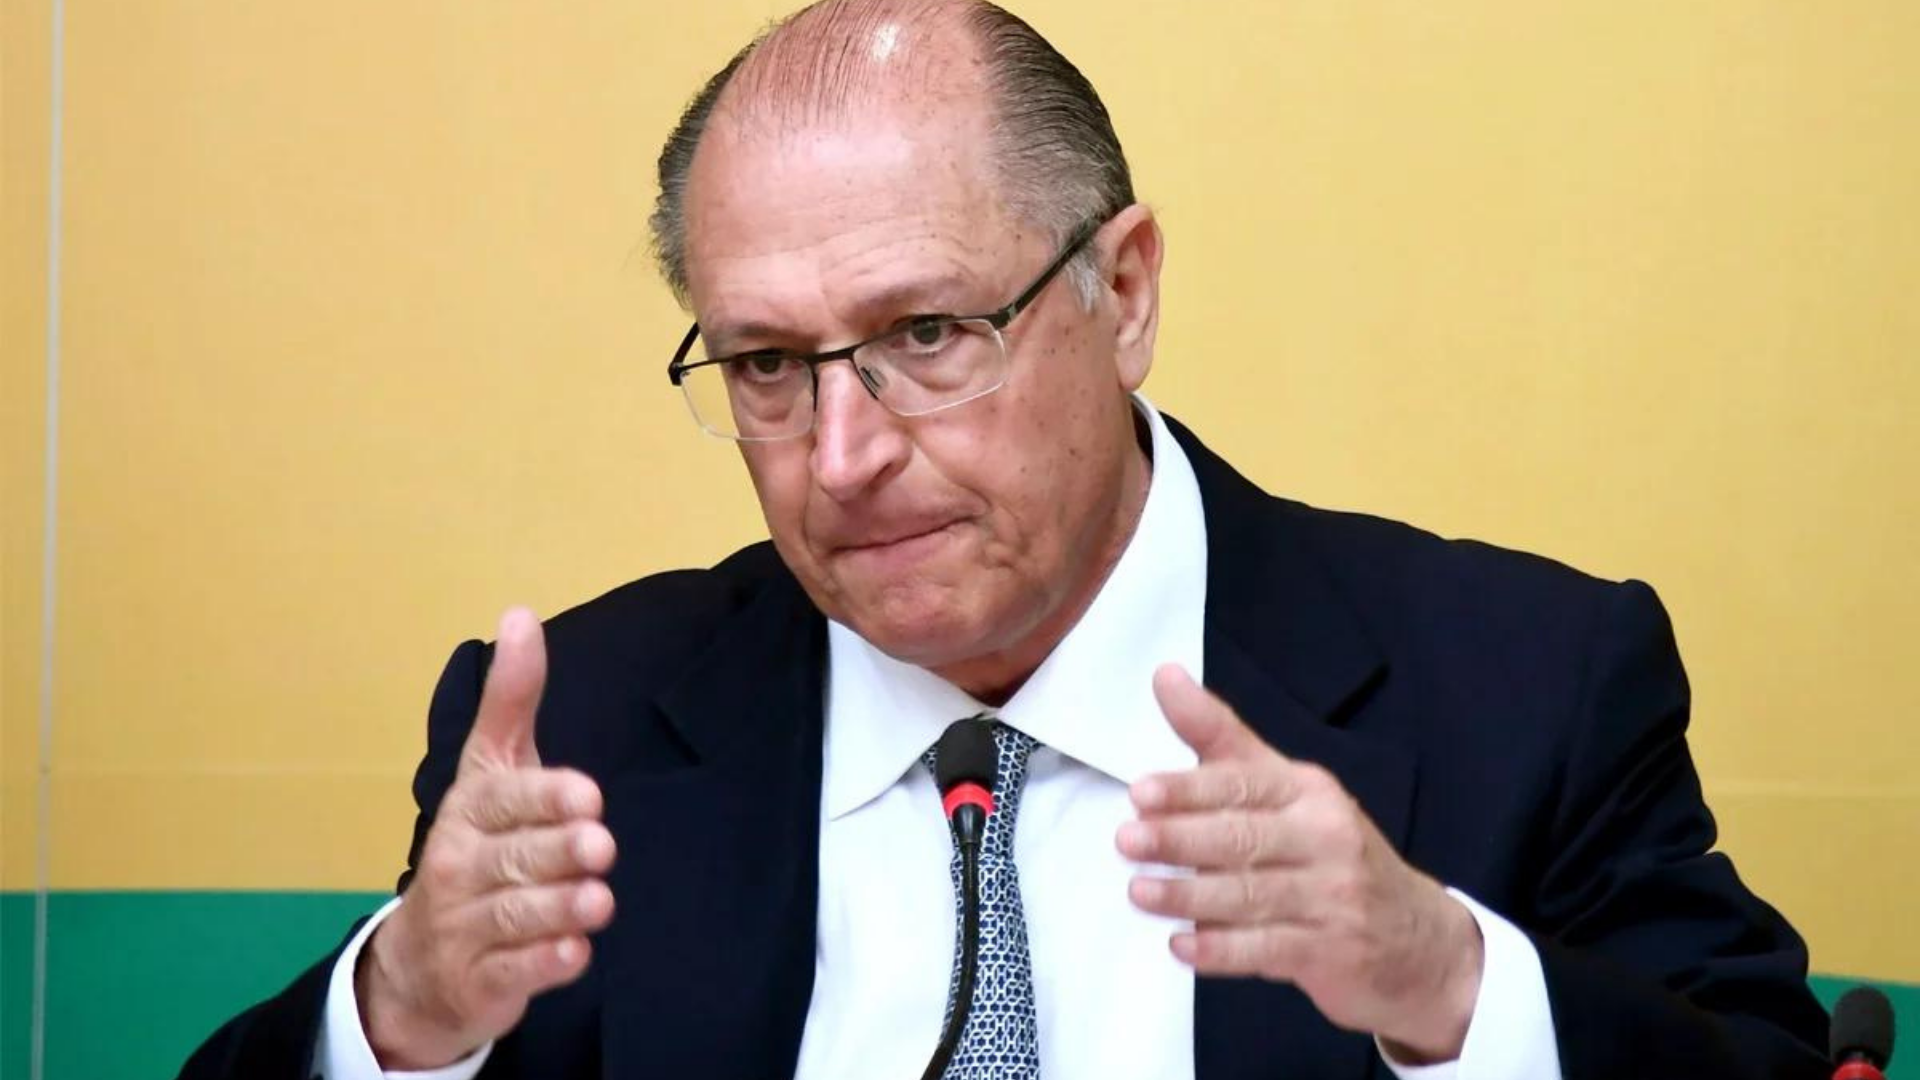 Alckmin nega caixa 2 e acusa imprensa de "acusações injustas". Foto de Alkmin com expressão de preocupação no rosto, ele usa terno preto. 